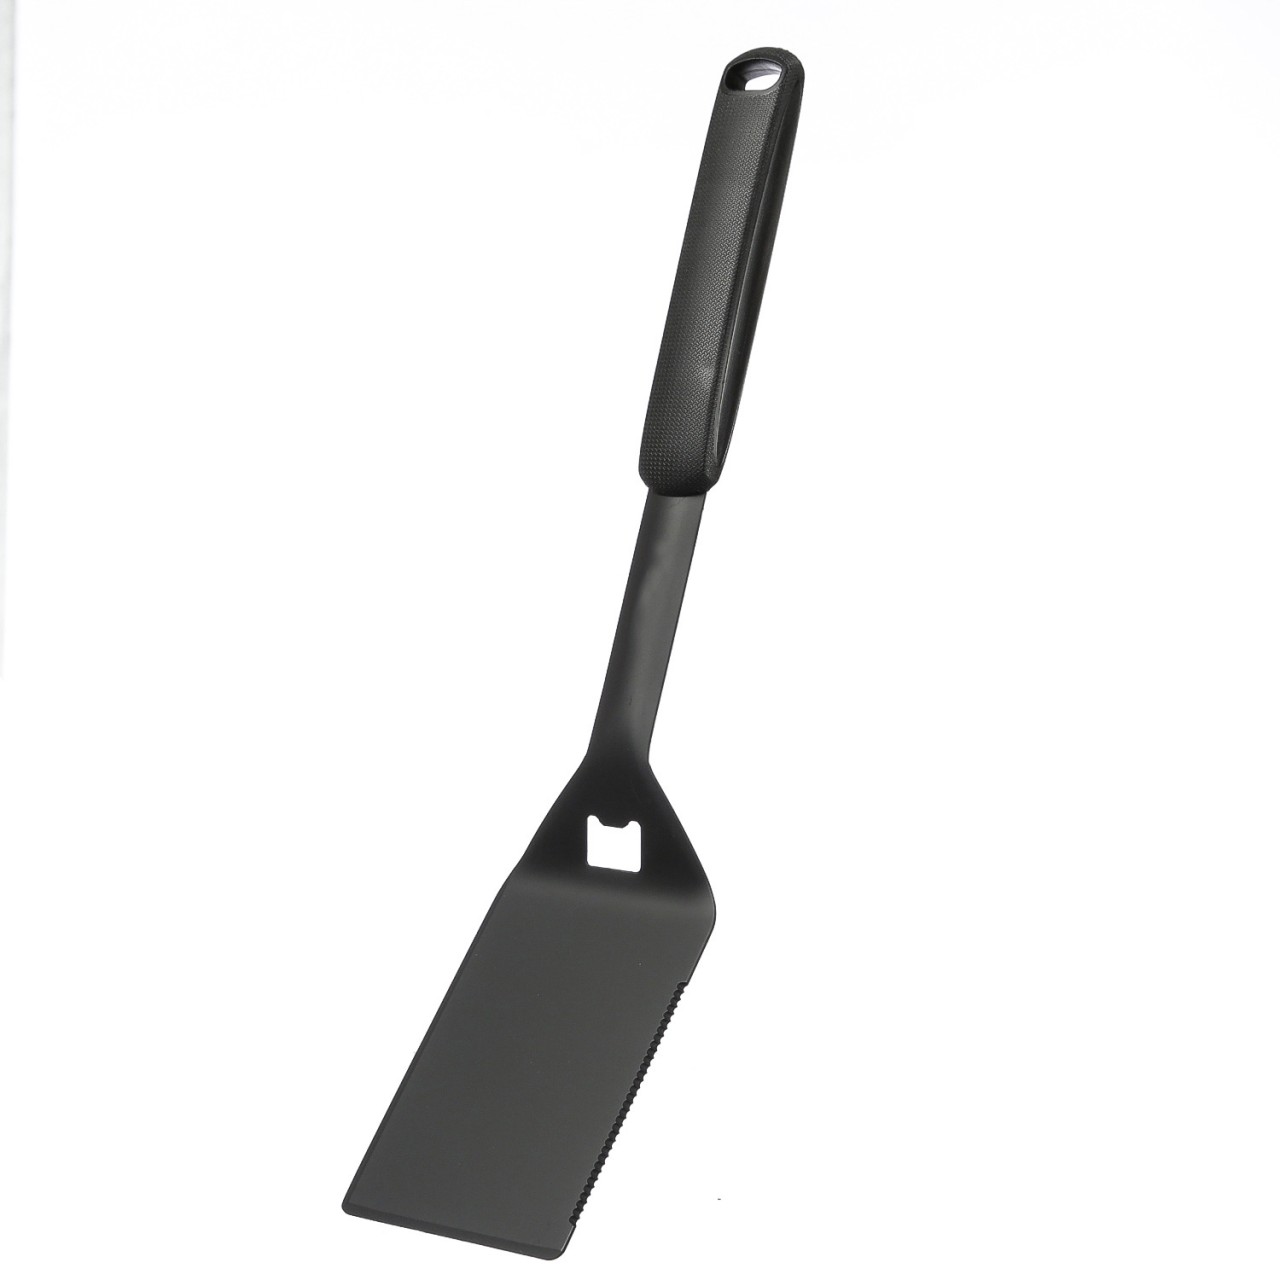 Grillspatel – Wender für BBQ und Pfanne – besonders robust – L: 45cm